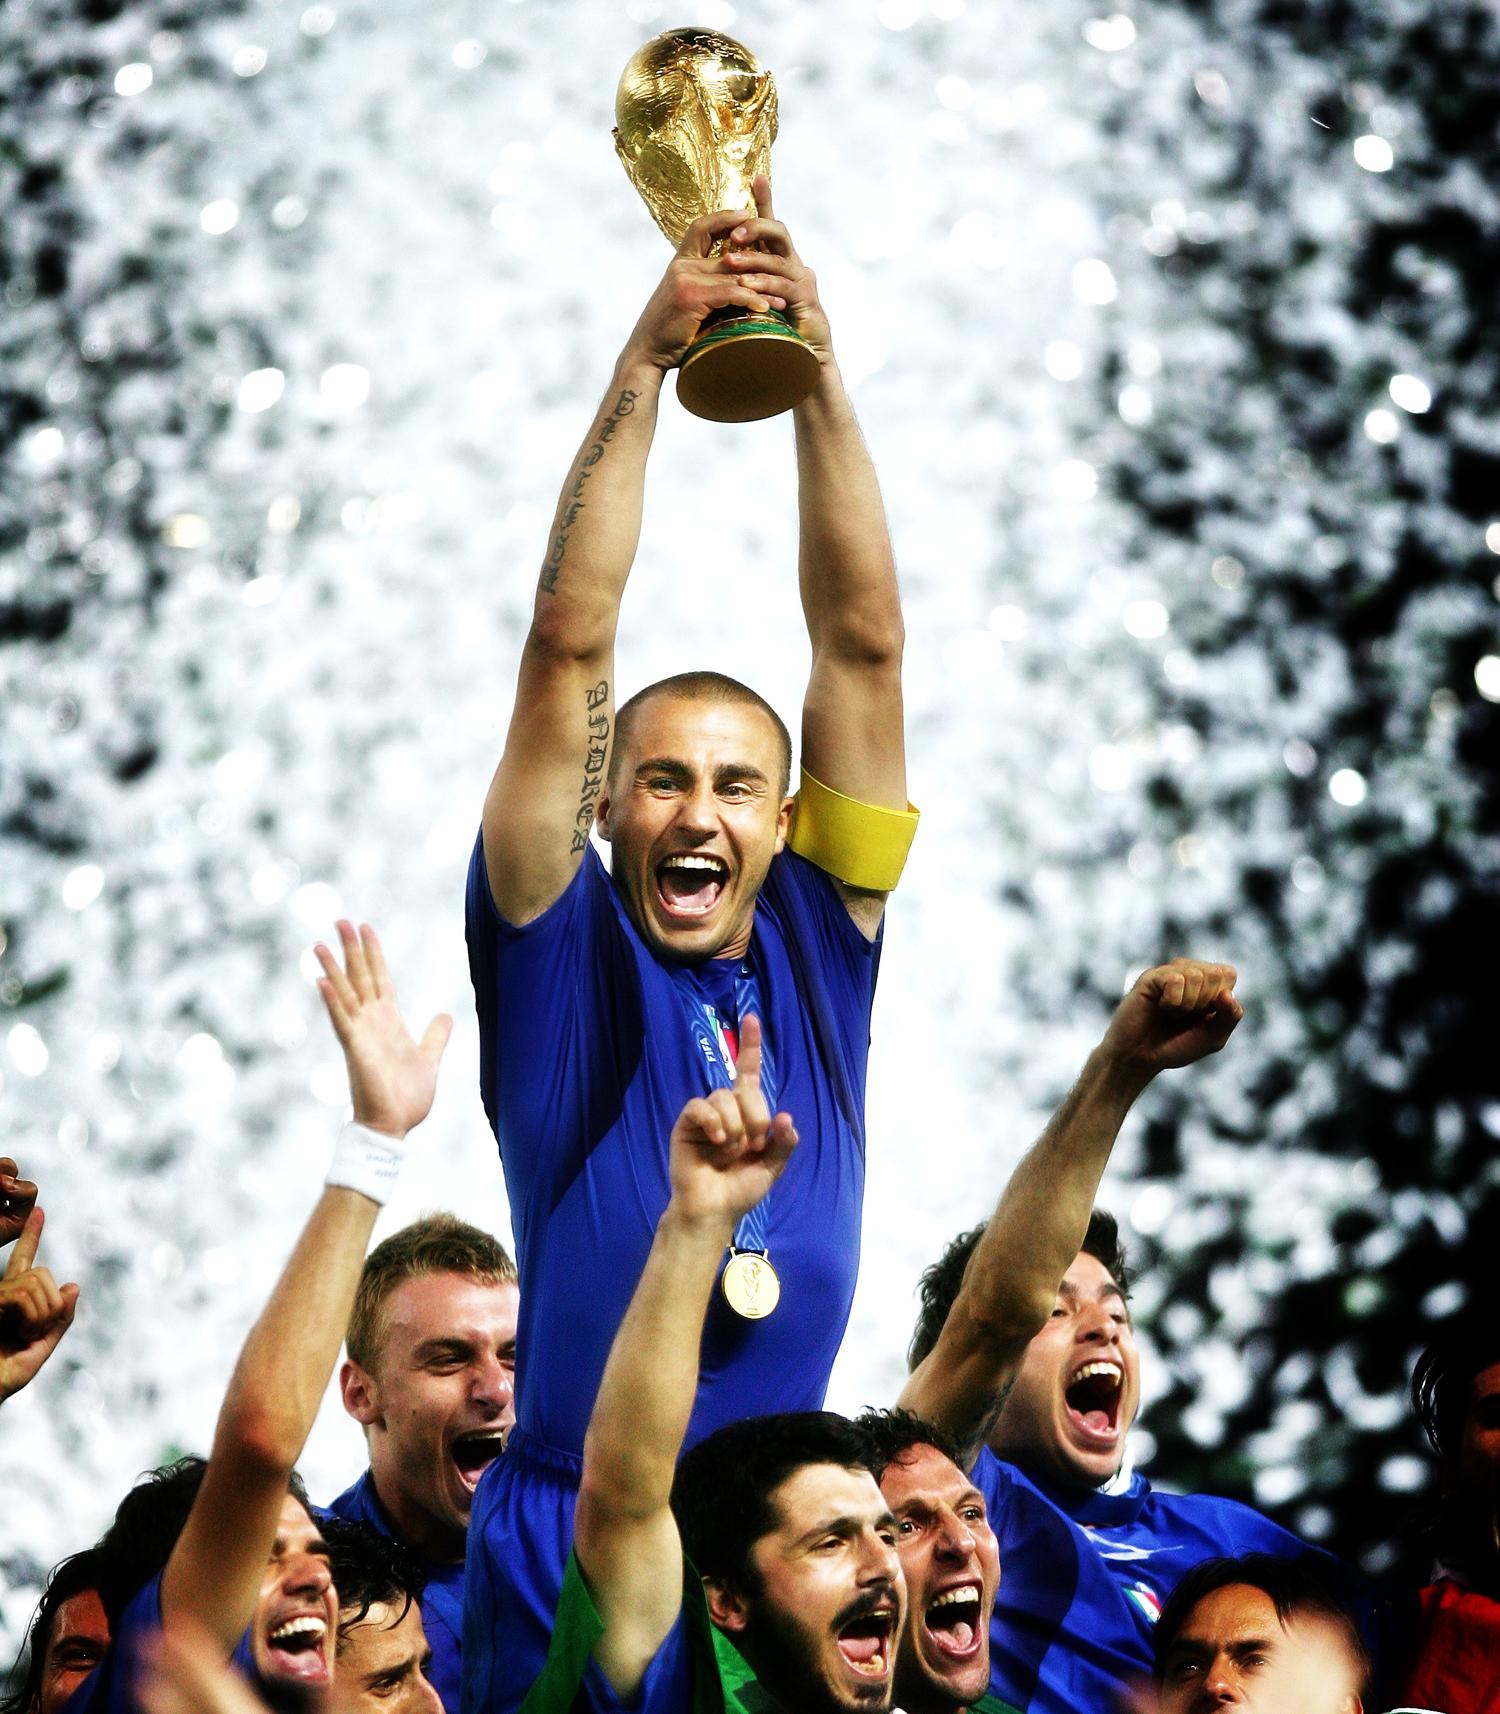 Italien vann VM 2006 efter dramatisk match som avgjordes på straffar i Olympiastadion i Berlin. Här höjer lagkaptenen Fabio Cannavaro VM-bucklan.